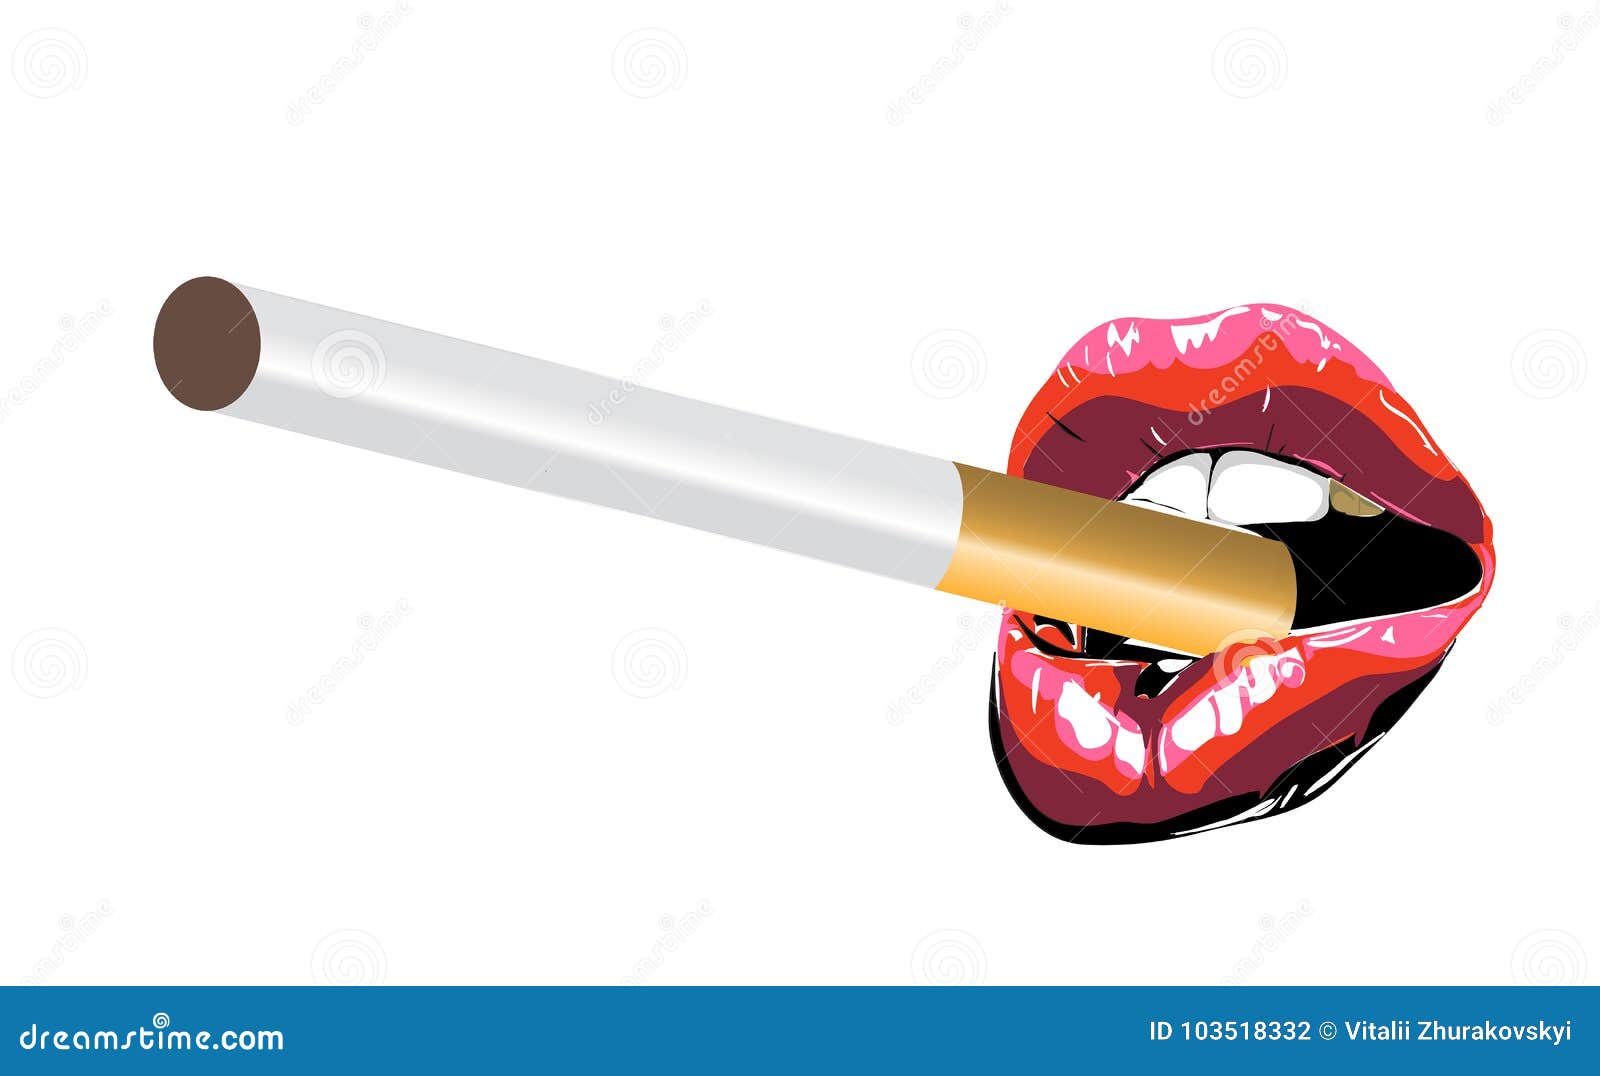 香烟嘴唇妇女 库存图片. 图片 包括有 唇膏, 妇女, 香烟, 暂挂, 表面, 女性, 嘴唇, 上升了, 烟雾 - 6691201